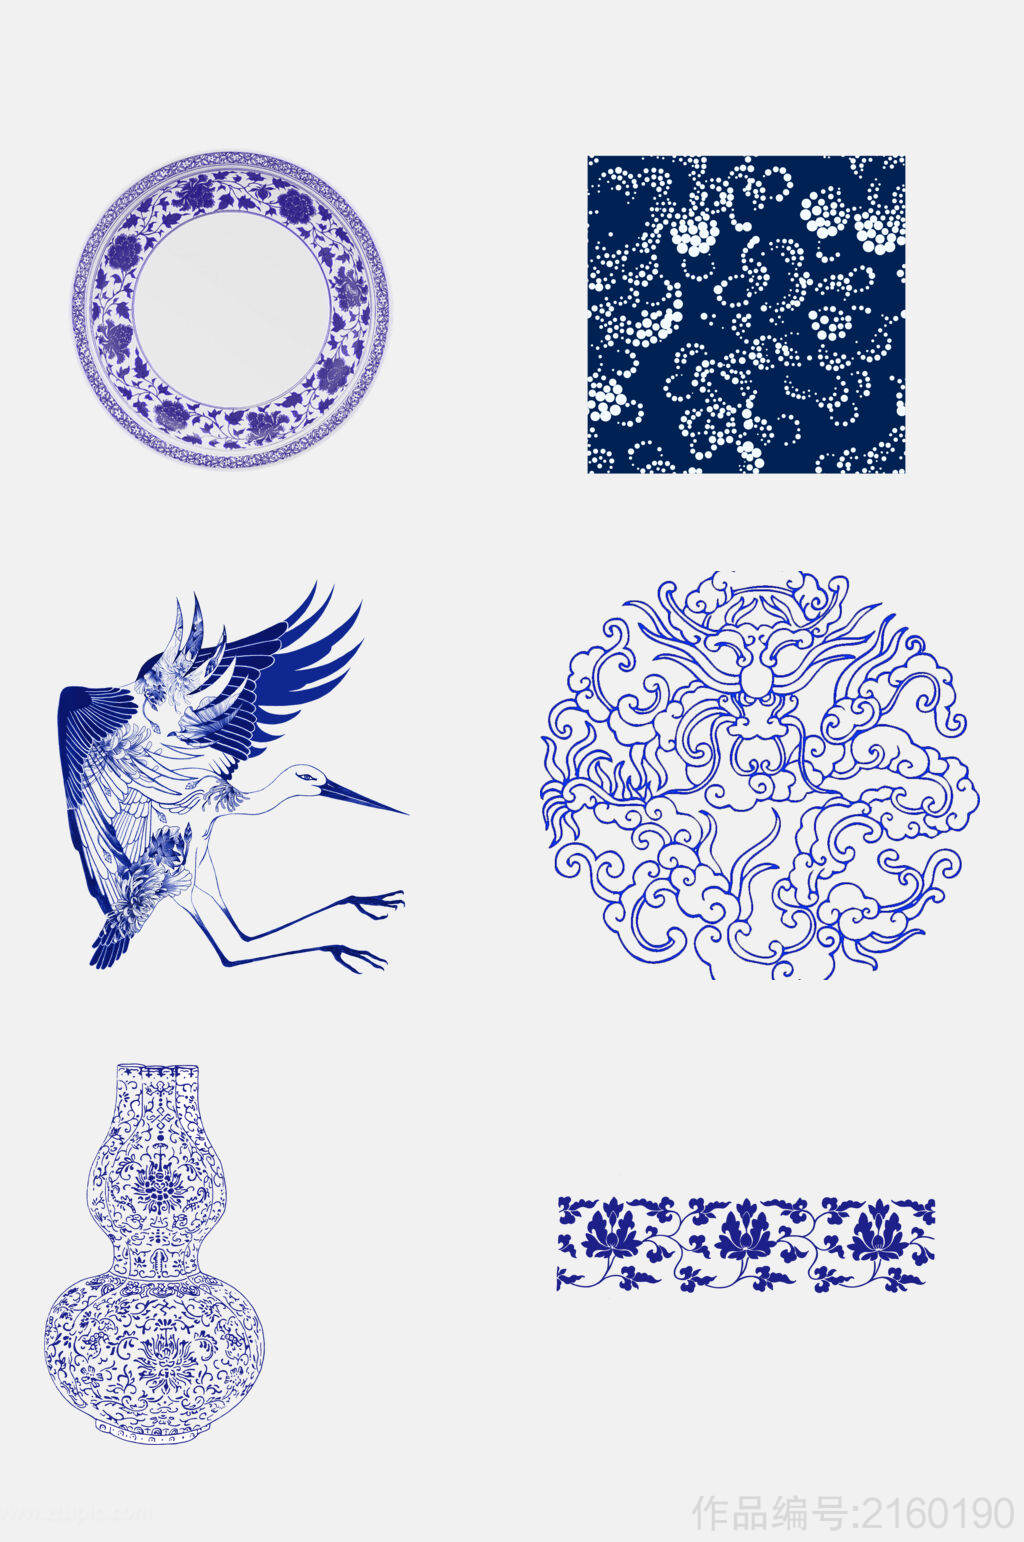 创意中国风青花瓷动物图案素材-设计元素素材下载